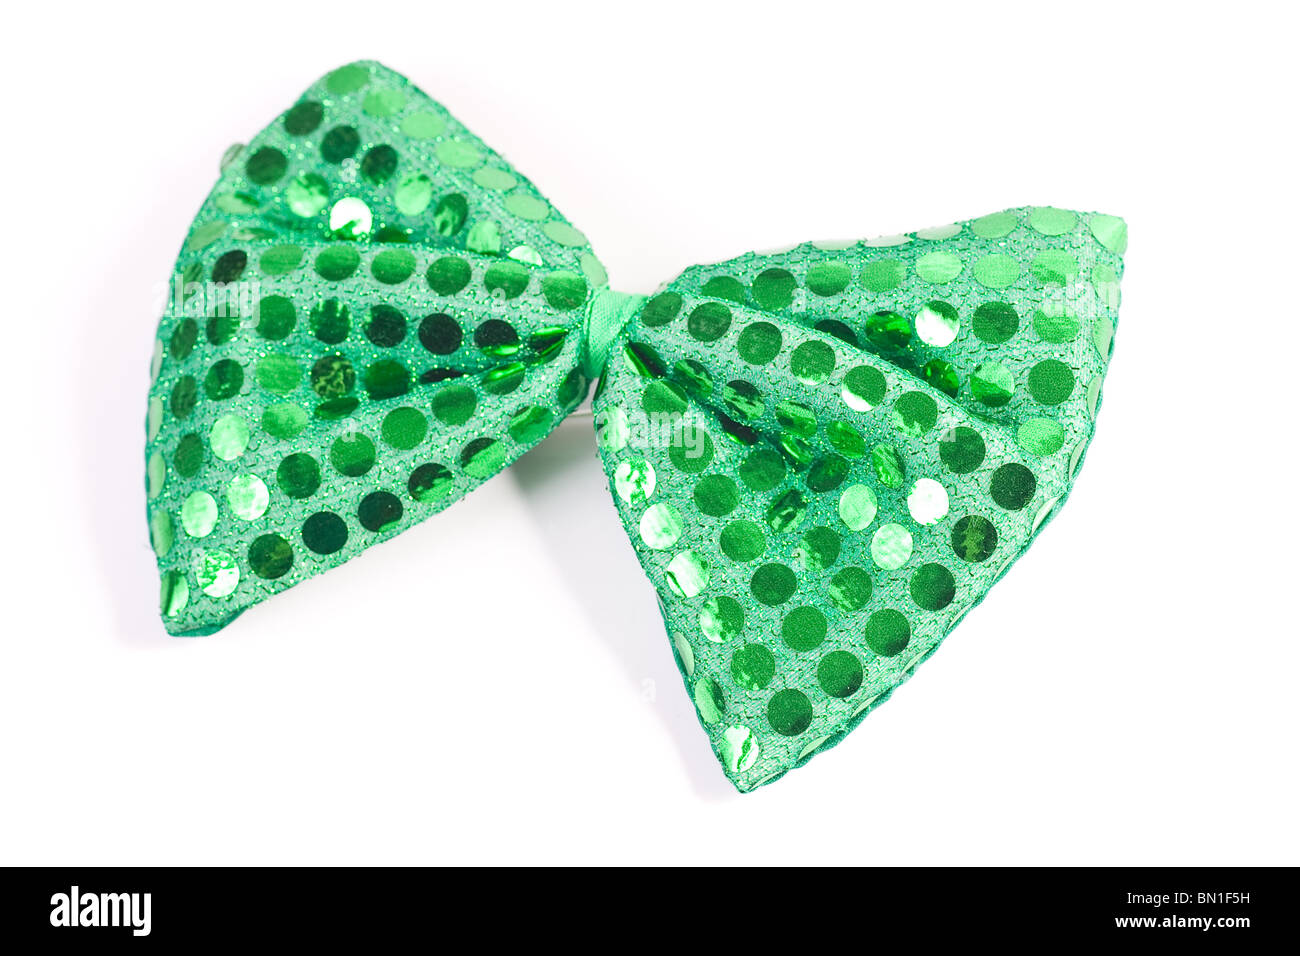 Nahaufnahme von einer grünen Pailletten Fliege, verwendet vor allem während der St. Patricks Day, Isolated on White. Stockfoto